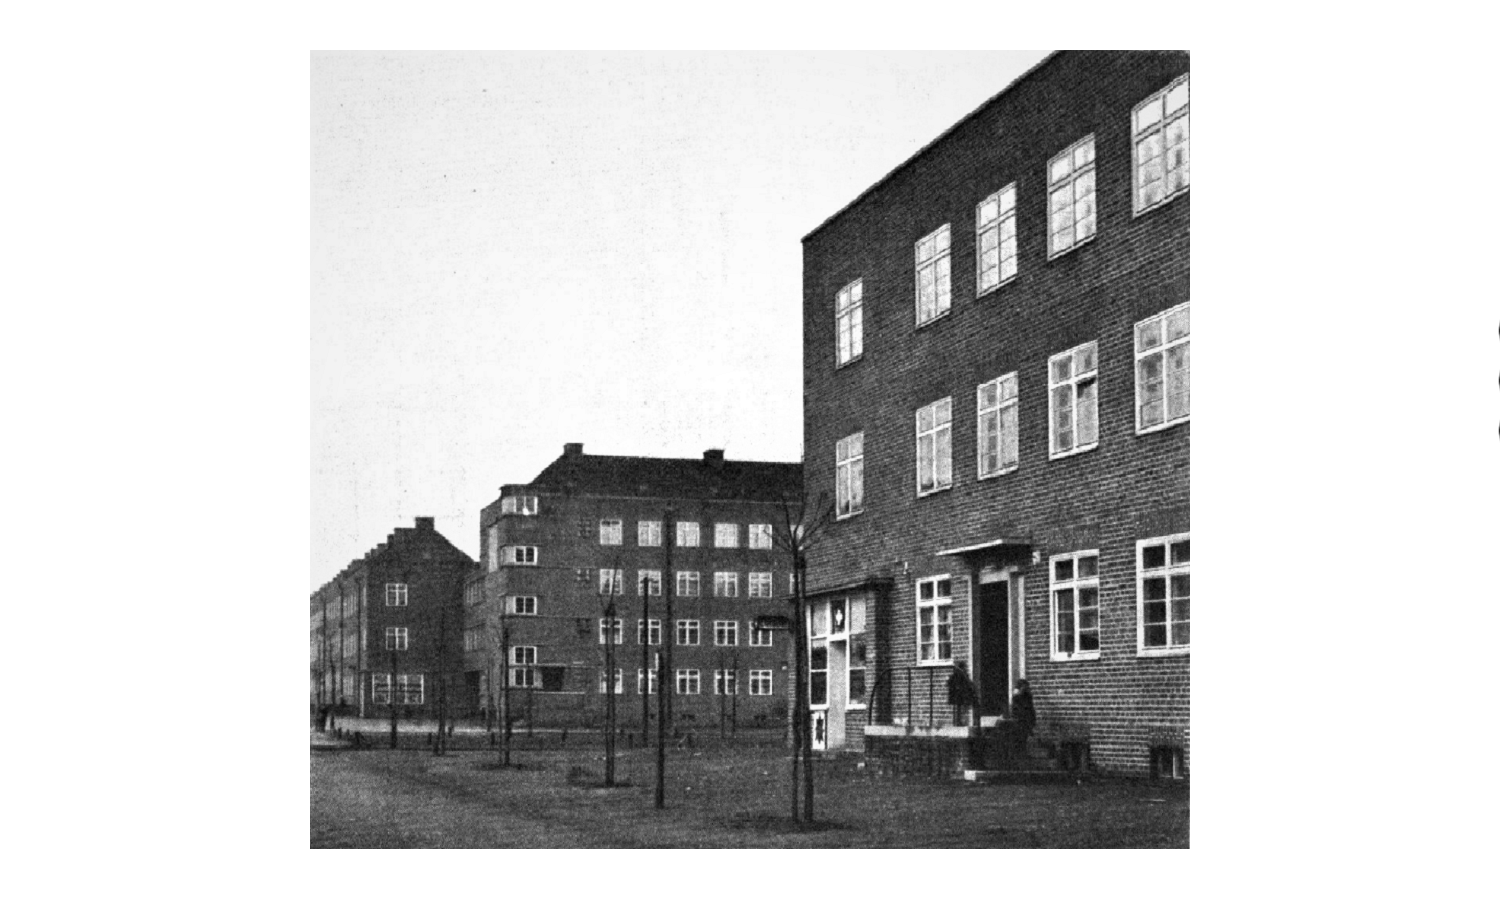 Instytut Langfuhr – Zabudowa według projektu architektów Martina Kiesslinga i Alberta Krügera, ul. Kościuszki (1929) Źródło: Gedanopedia